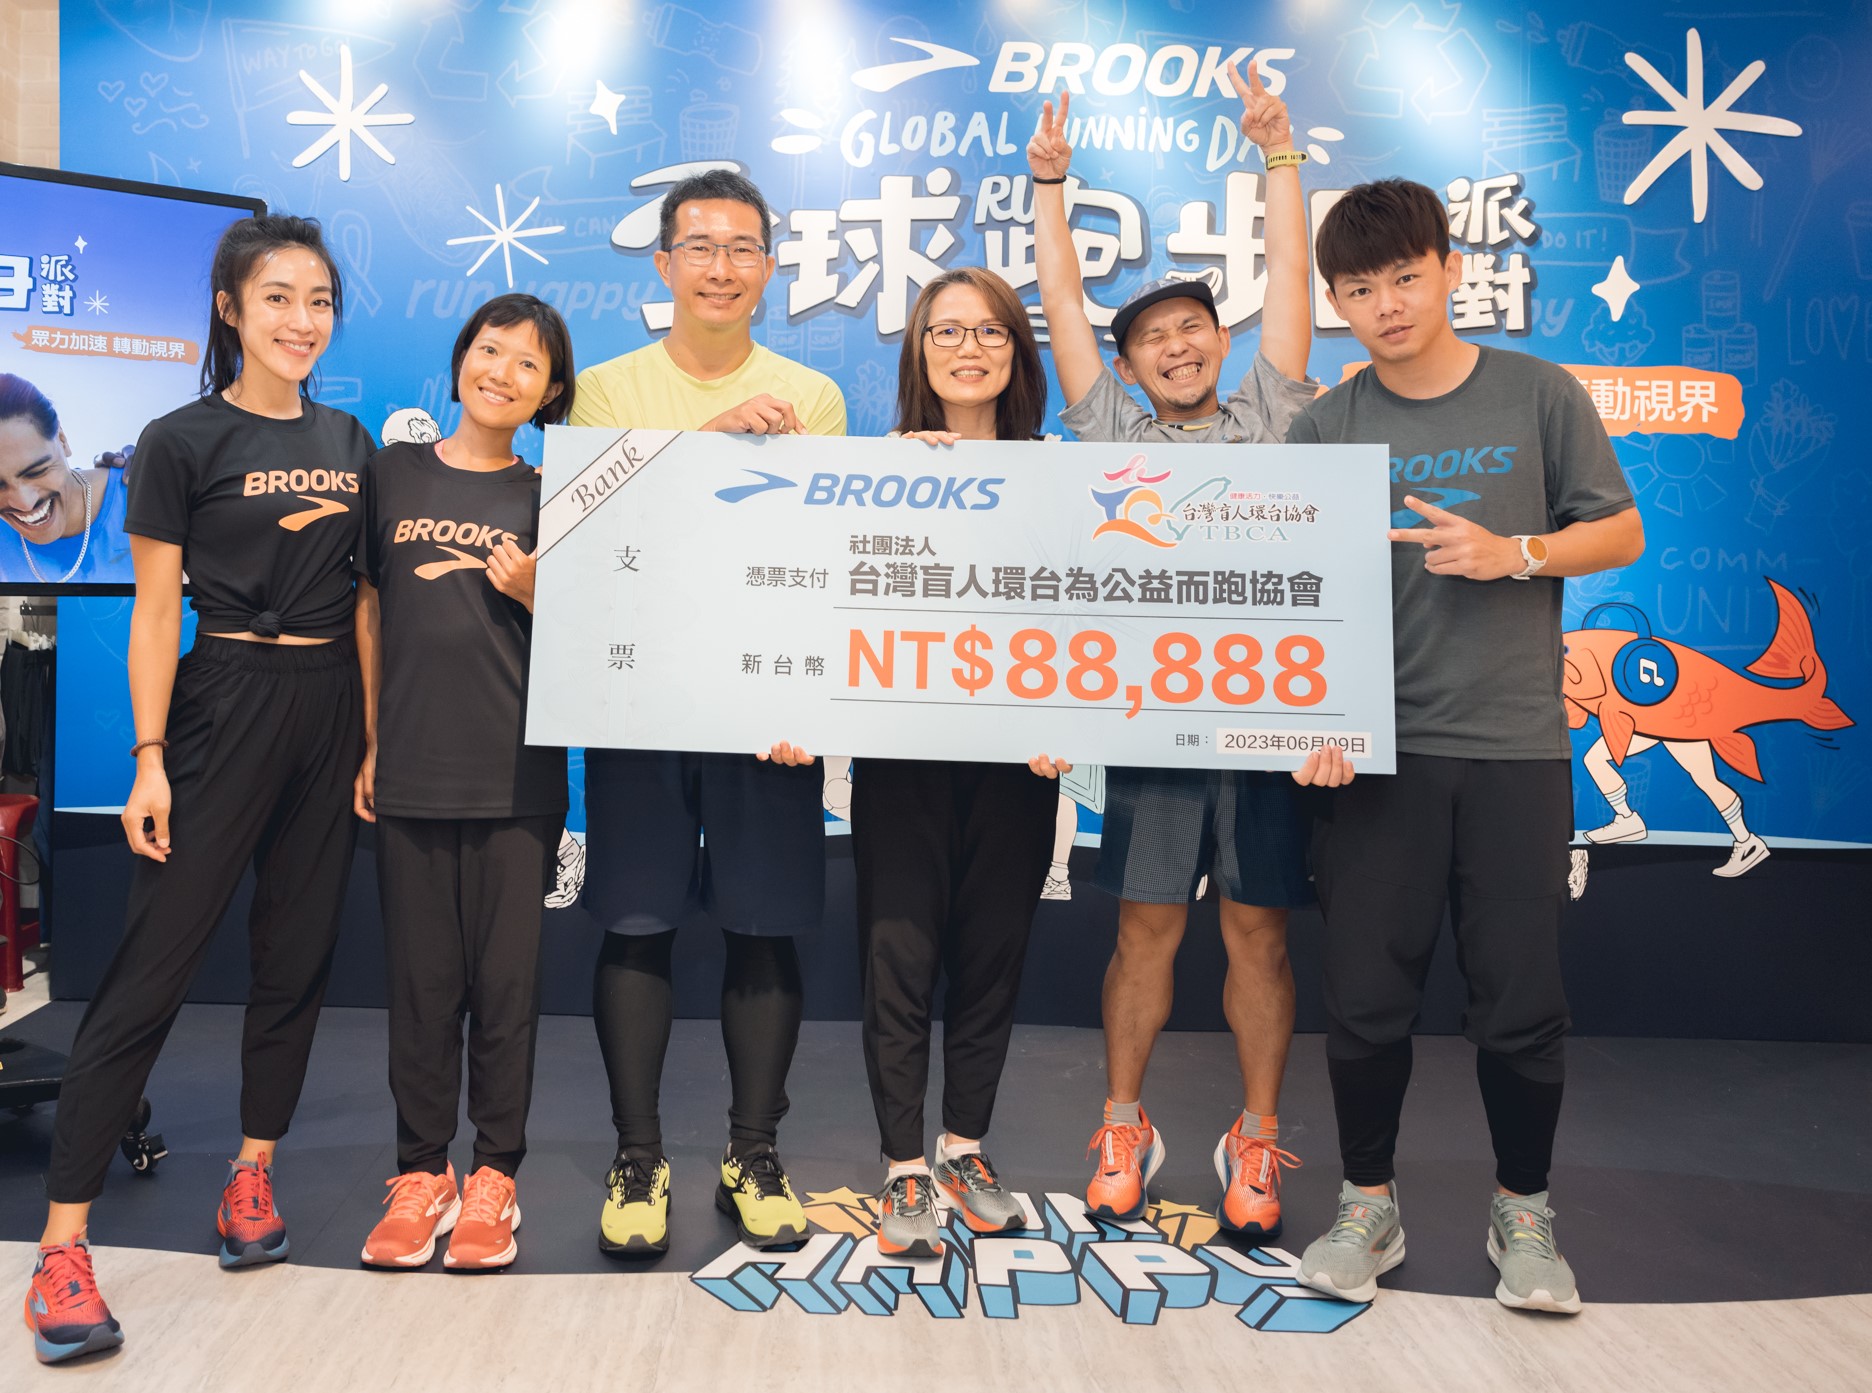 BROOKS 本次共捐贈 88,888元予台灣盲人環台為公益而跑協會